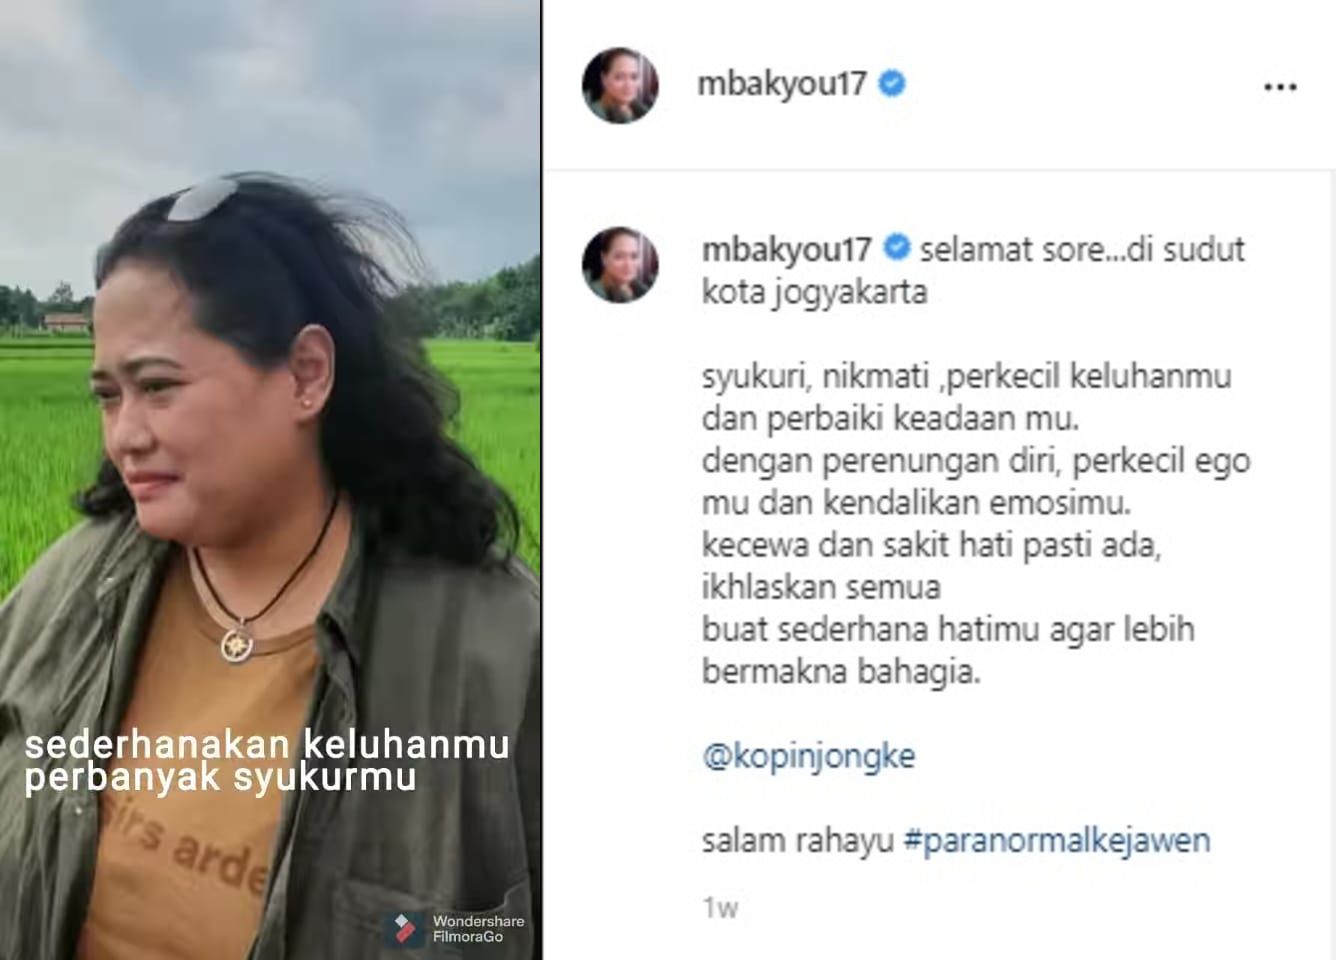 Mbak You, sosok paranormal kejawen Indonesia dikabarkan meninggal dunia pada Kamis, 1 Juli 2021. Ini unggahan terakhir dari Mbak You dalam akun Instagramnya